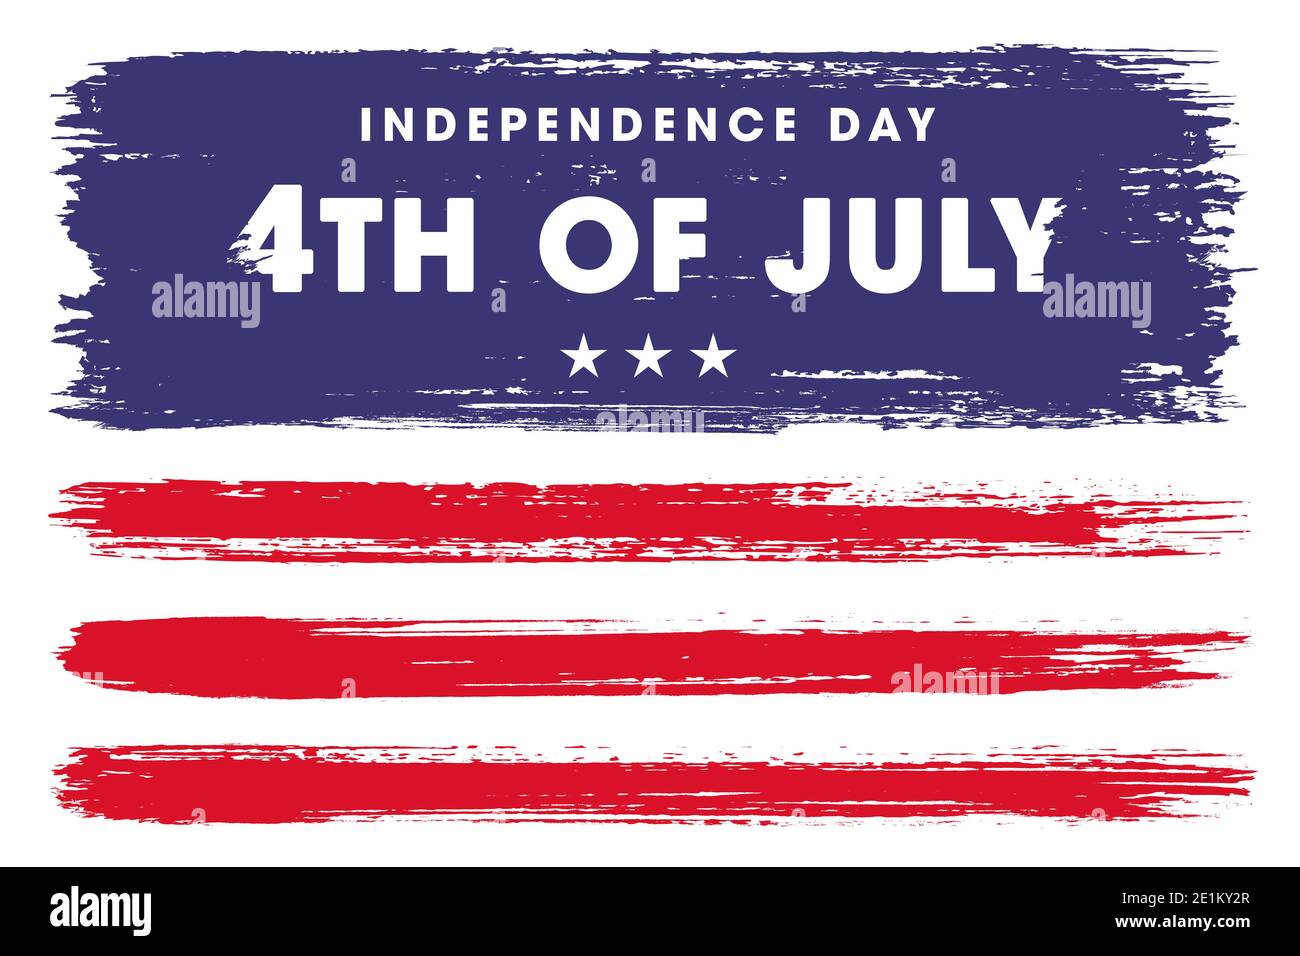 Joyeux 4 juillet, jour de l'indépendance des États-Unis. Arrière-plan bleu et rouge avec les étoiles et les bandes du drapeau américain. Carte, poster, haute résolution Banque D'Images